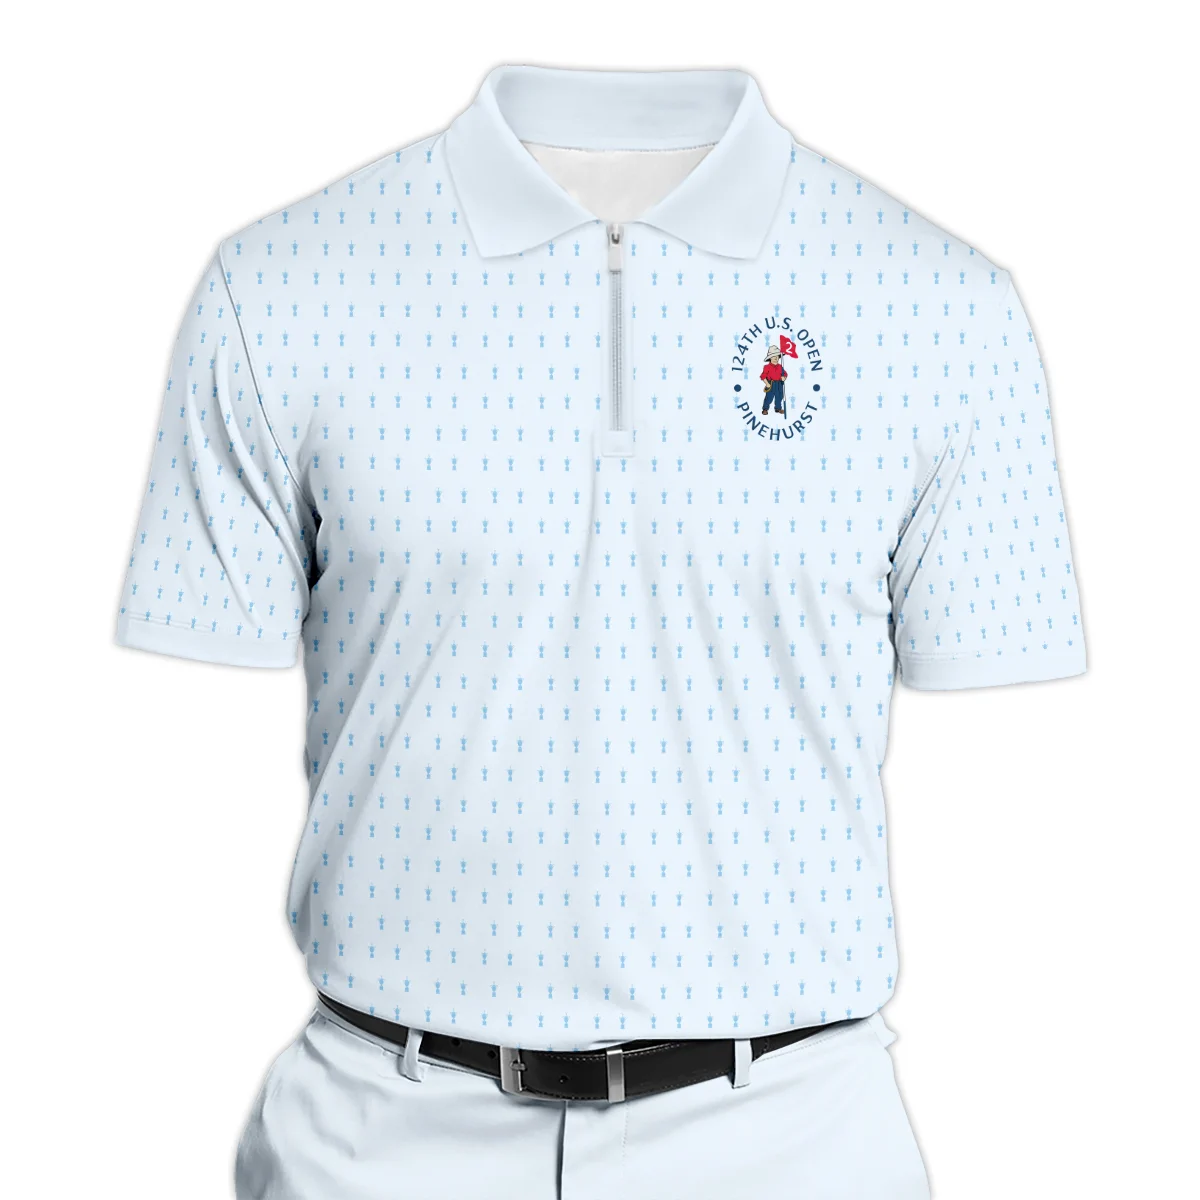 Golf Pattern Cup Light Blue Green 124th U.S. Open Pinehurst Zipper Polo Shirt Style Classic Zipper Polo Shirt For Men